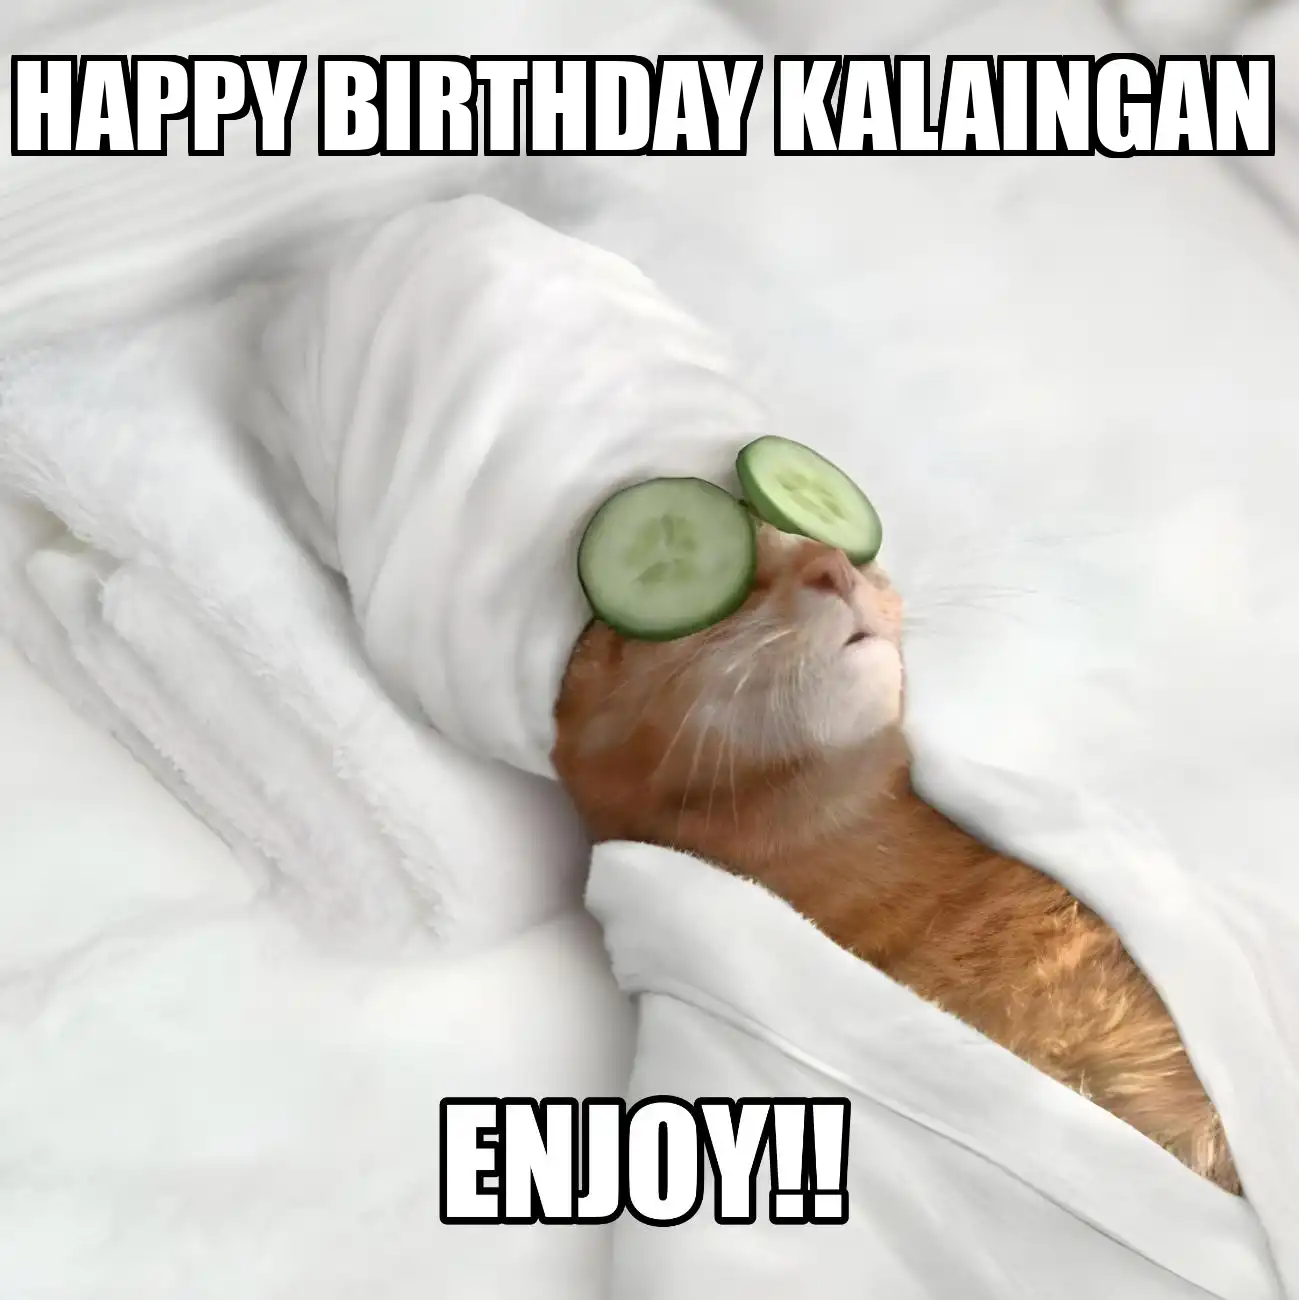 Happy Birthday Kalaingan Enjoy Cat Meme